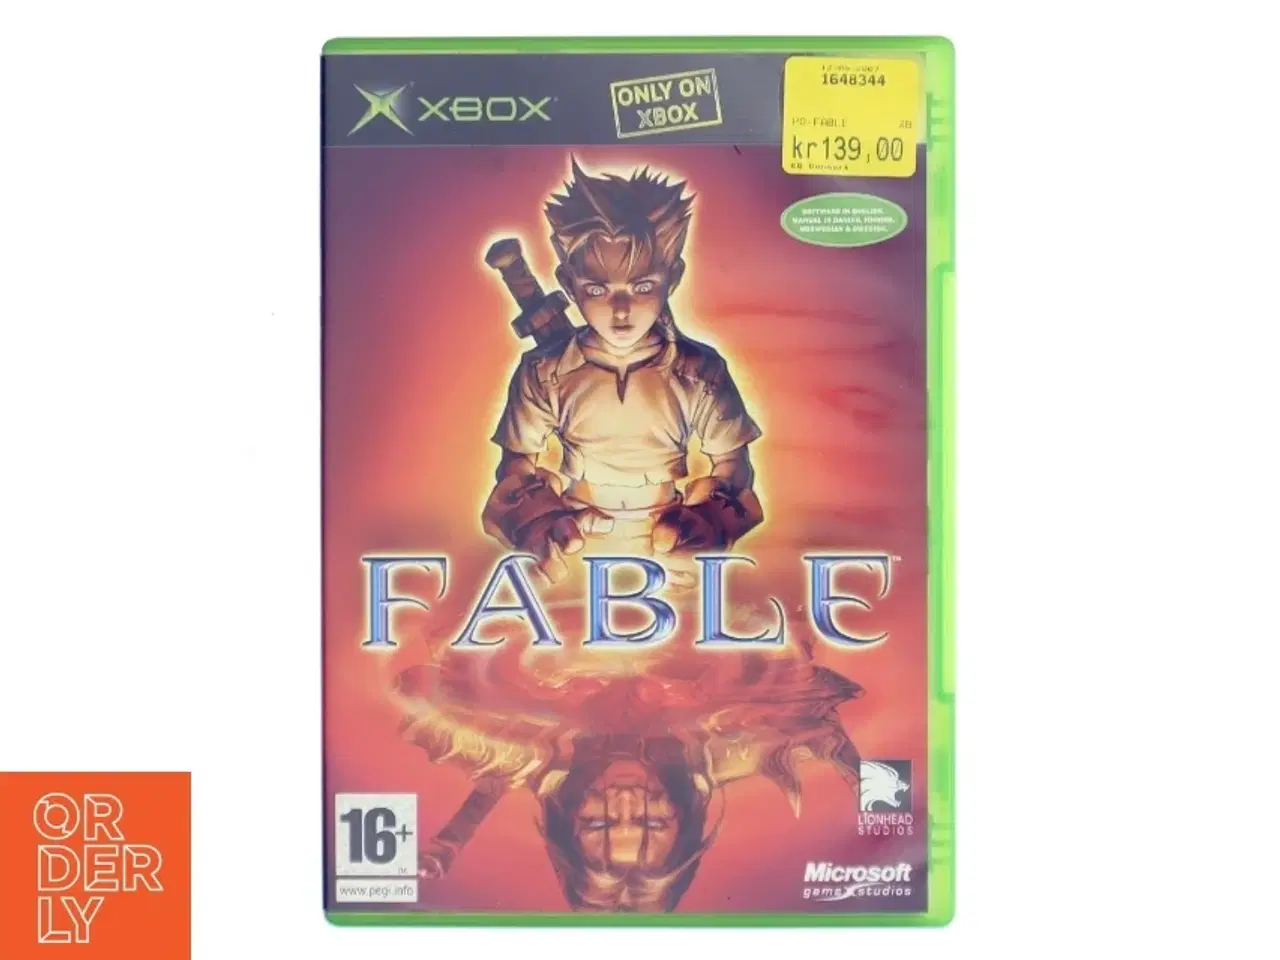 Billede 1 - Fable Xbox spil fra Microsoft